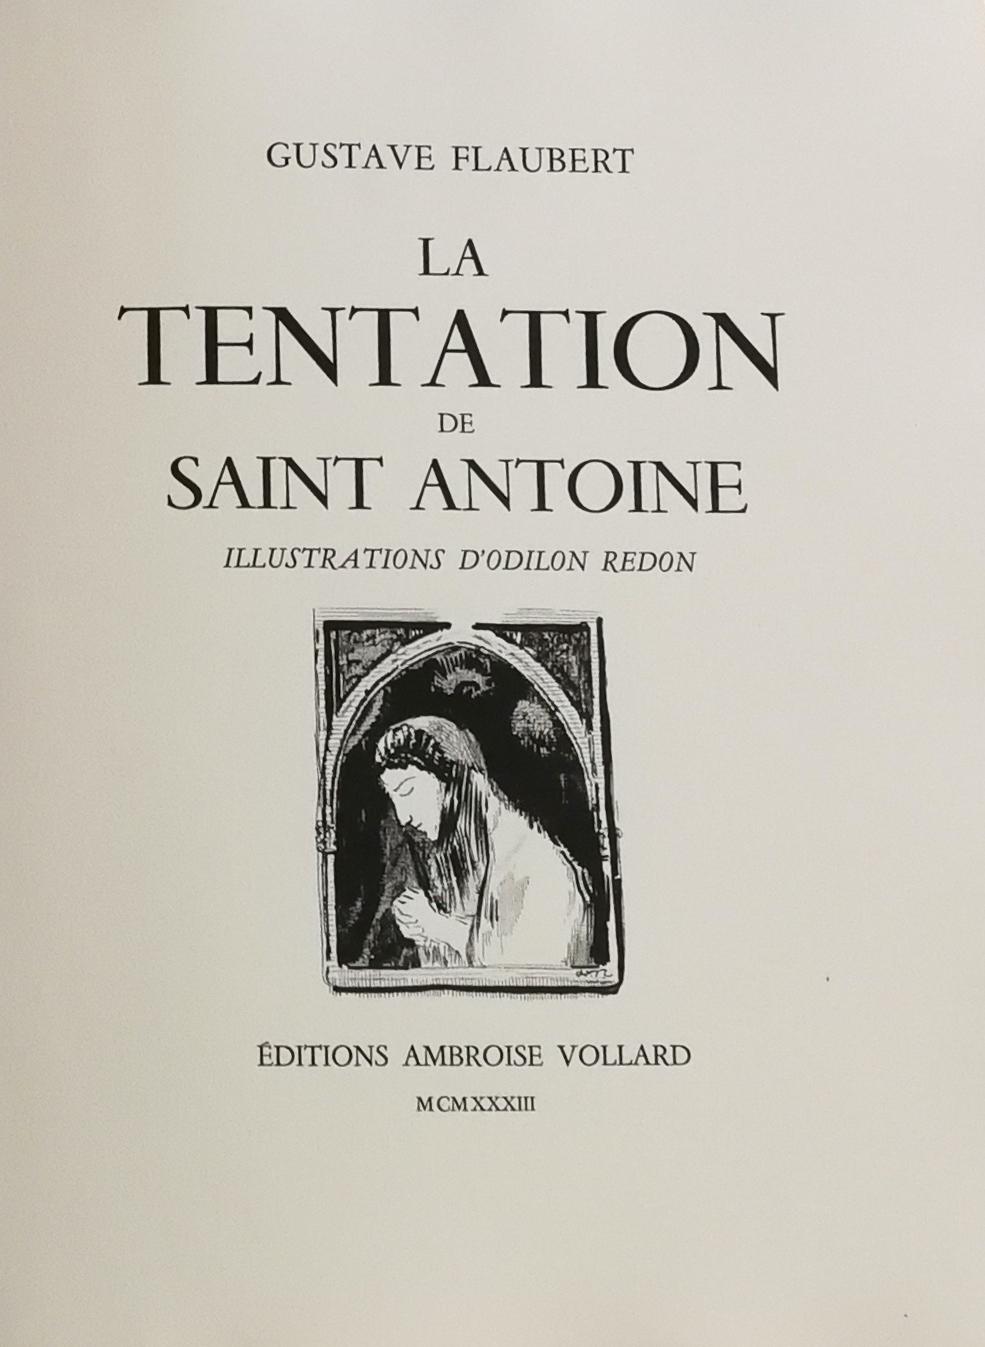 La Tentation de Saint Antoine, Gustave Flauberts illustriertes Buch von O. Redon